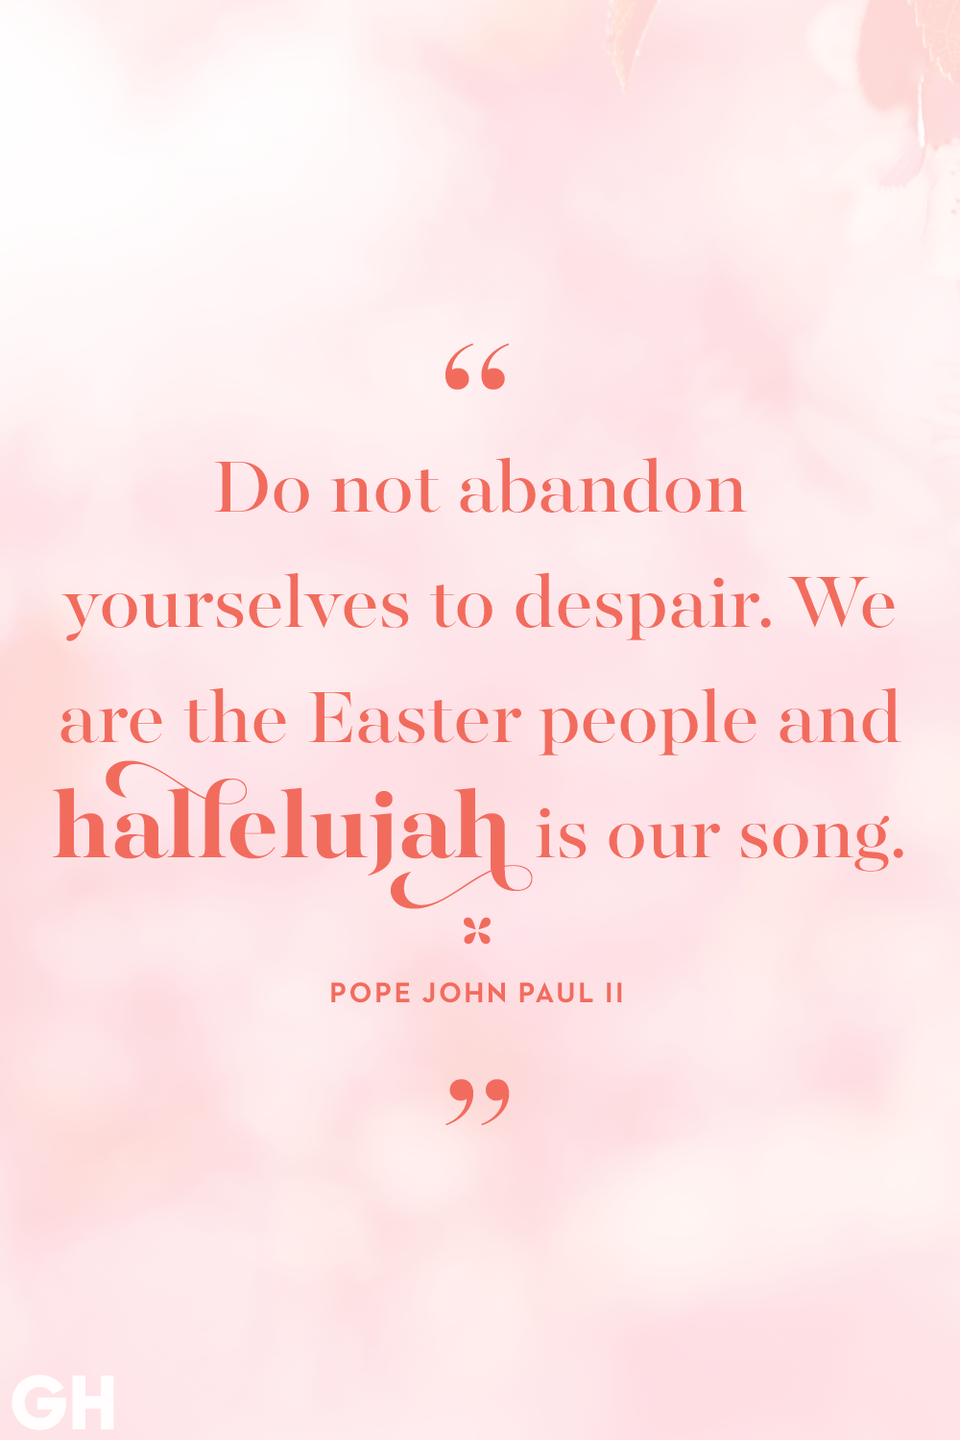 14) Pope John Paul II